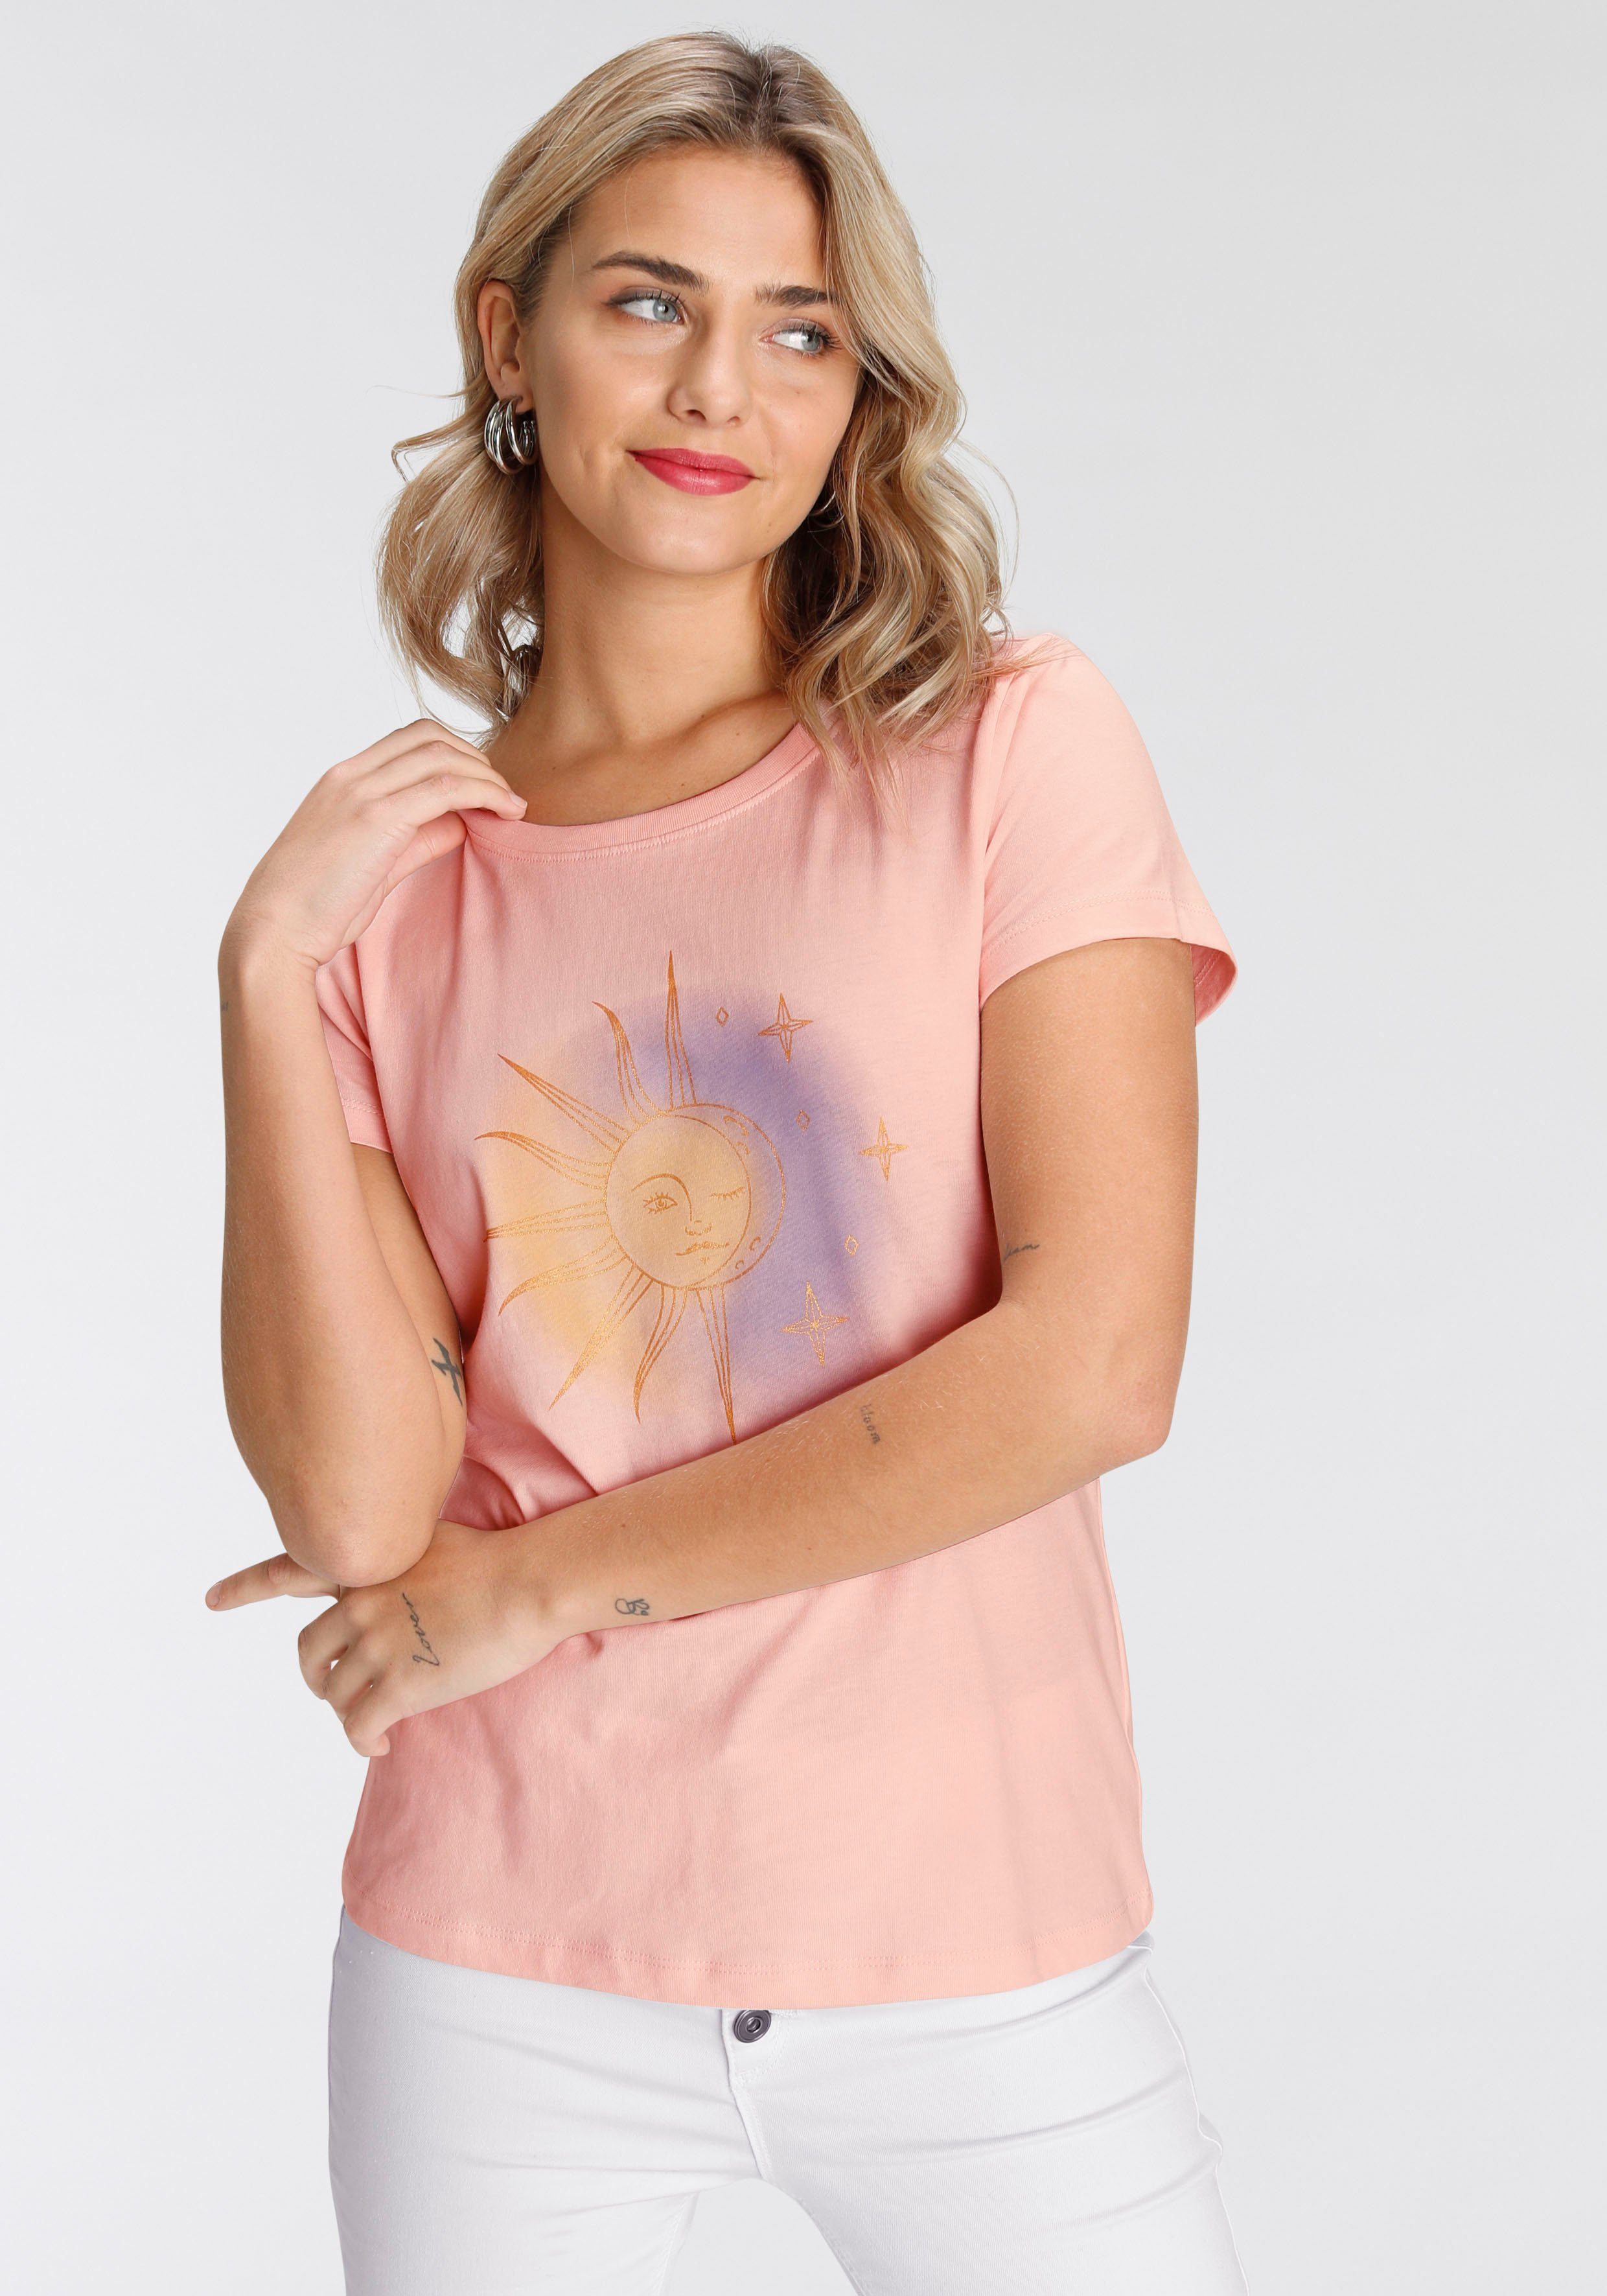 rosa in verschiedenen AJC Designs modischen Print-Shirt